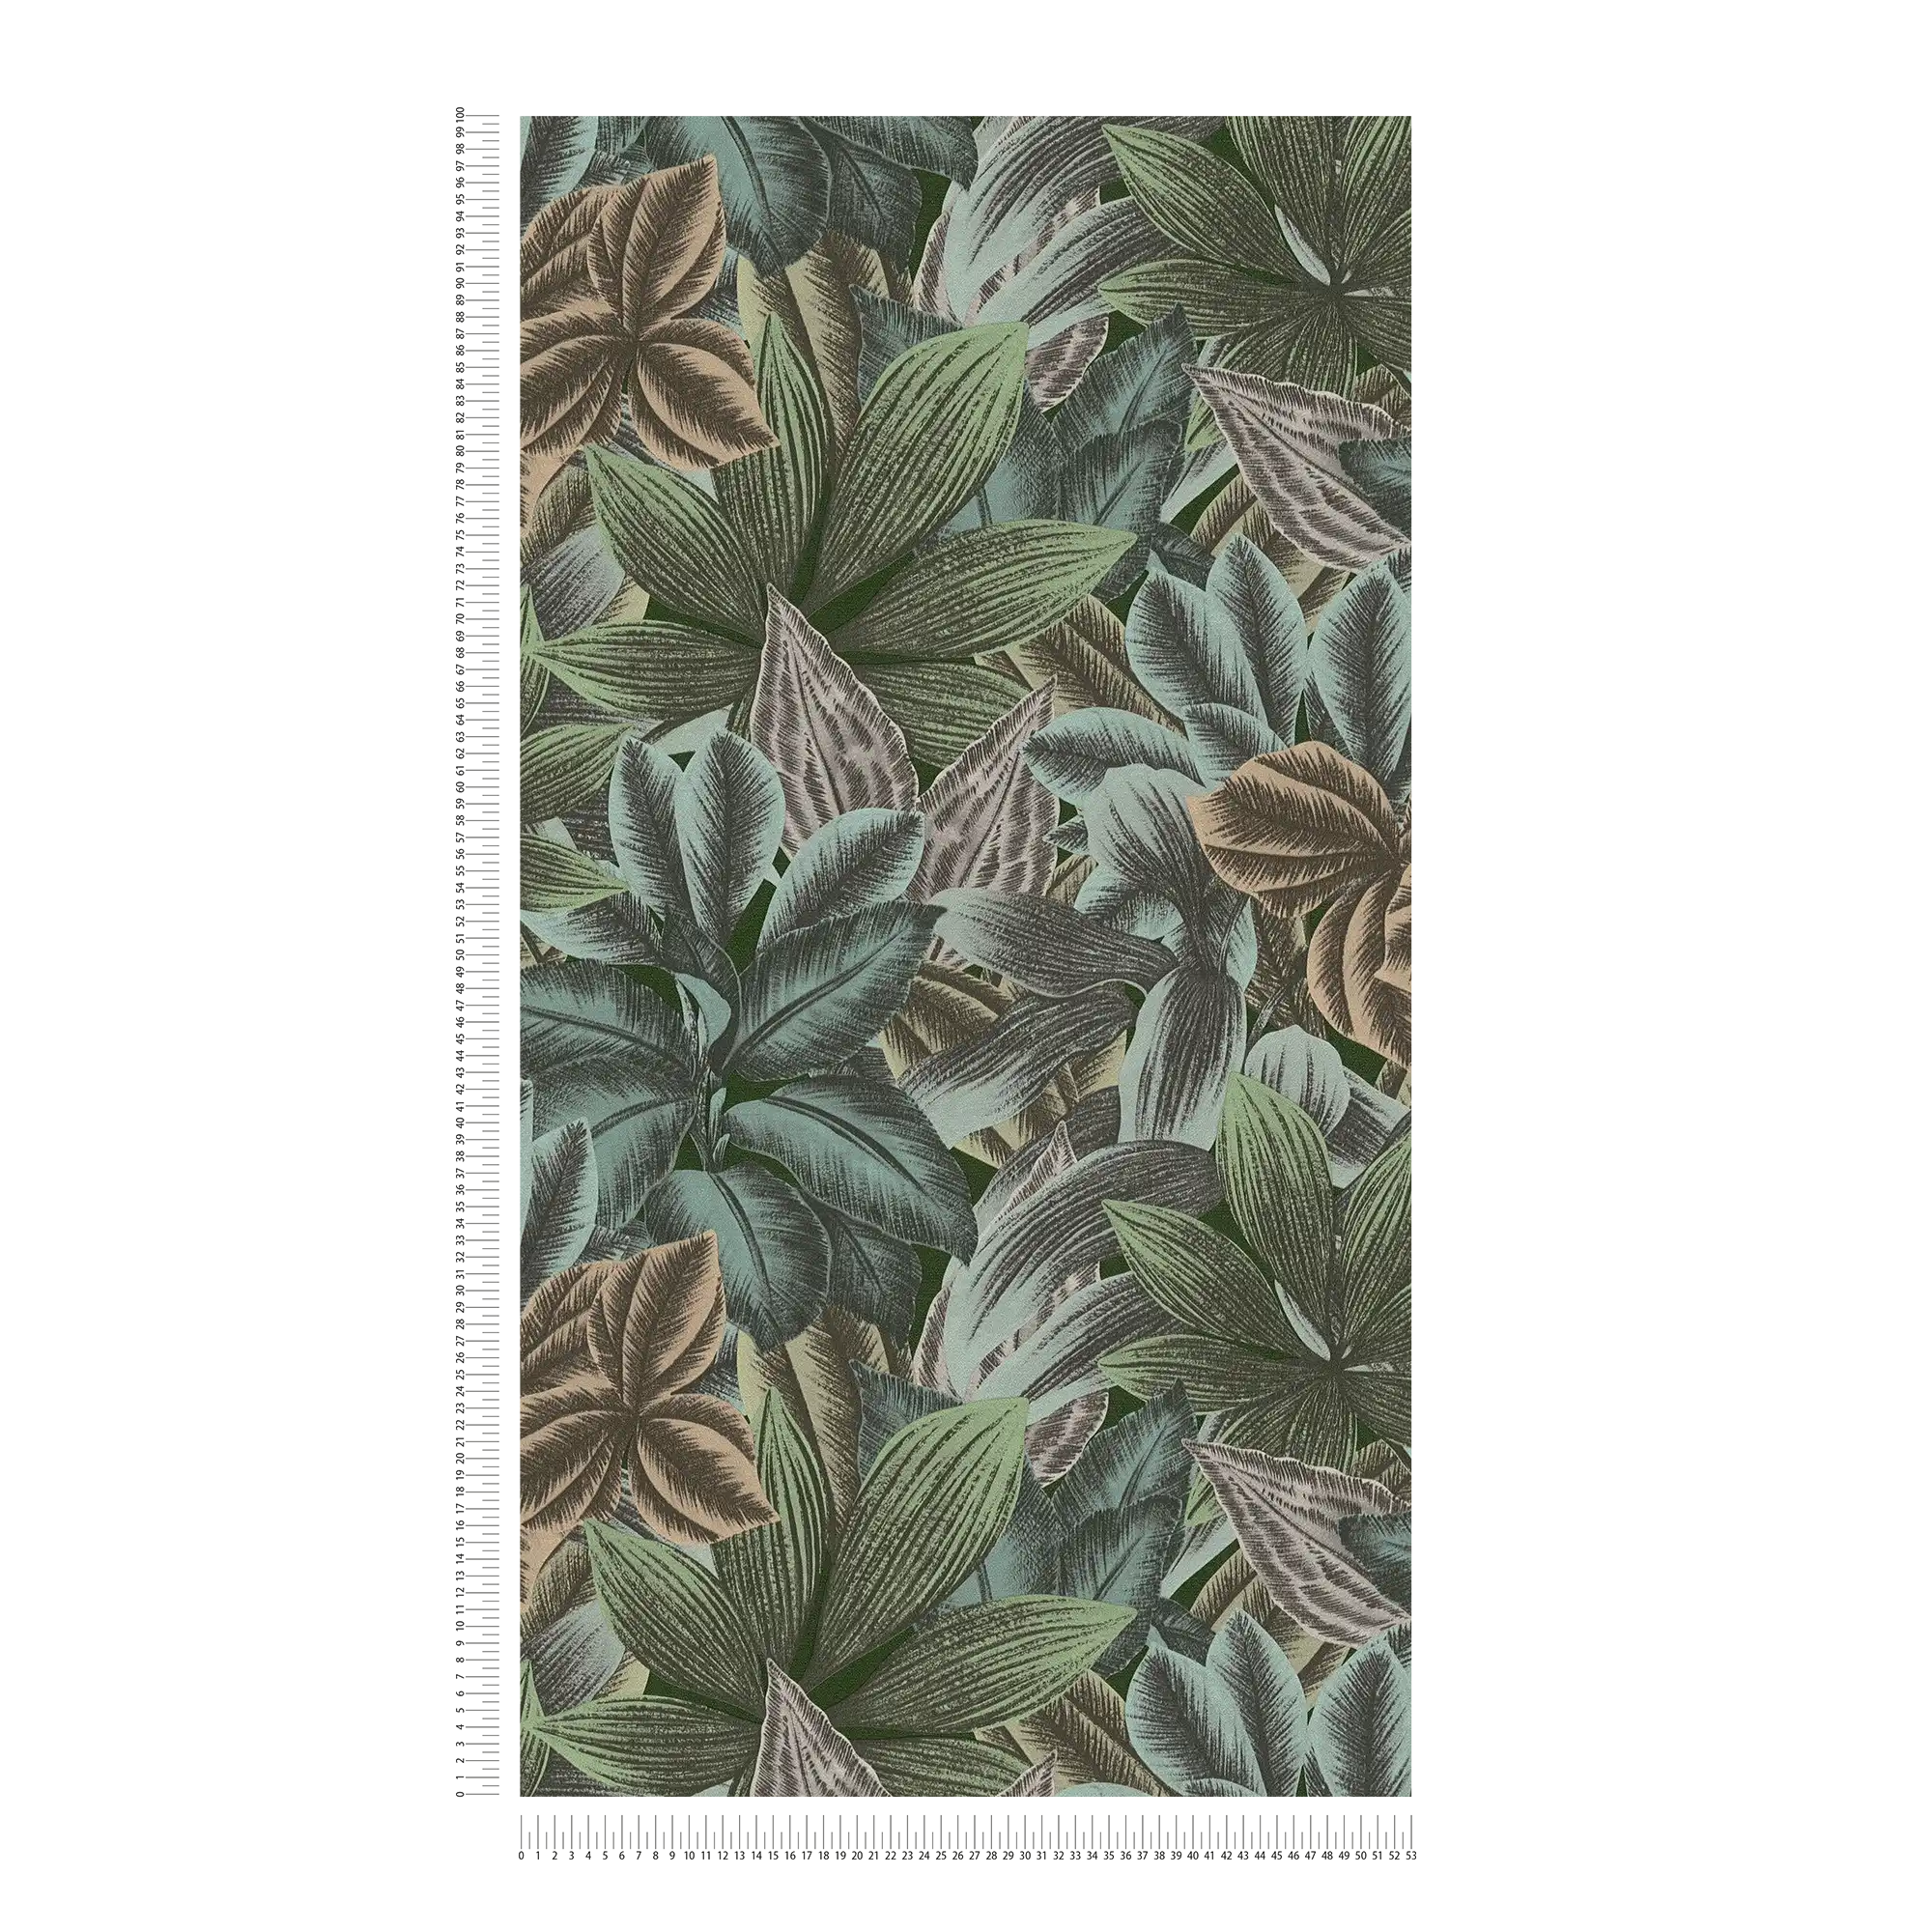             Bladpatroon behang met tropische look - groen, blauw, grijs
        